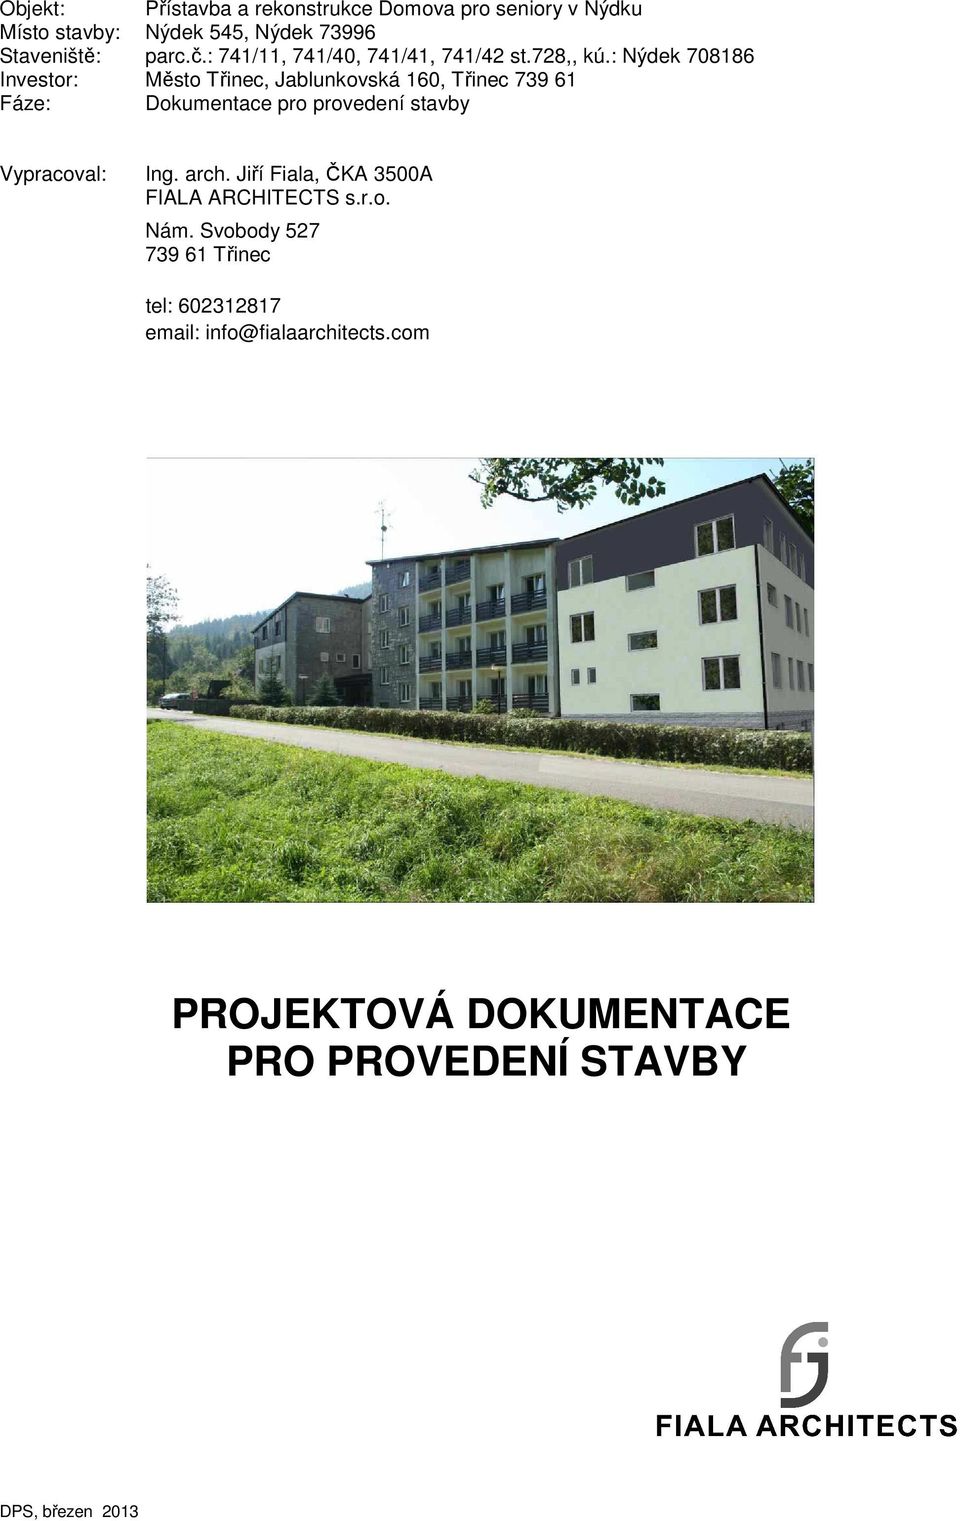 : Nýdek 708186 Investor: Město Třinec, Jablunkovská 160, Třinec 739 61 Fáze: Dokumentace pro provedení stavby